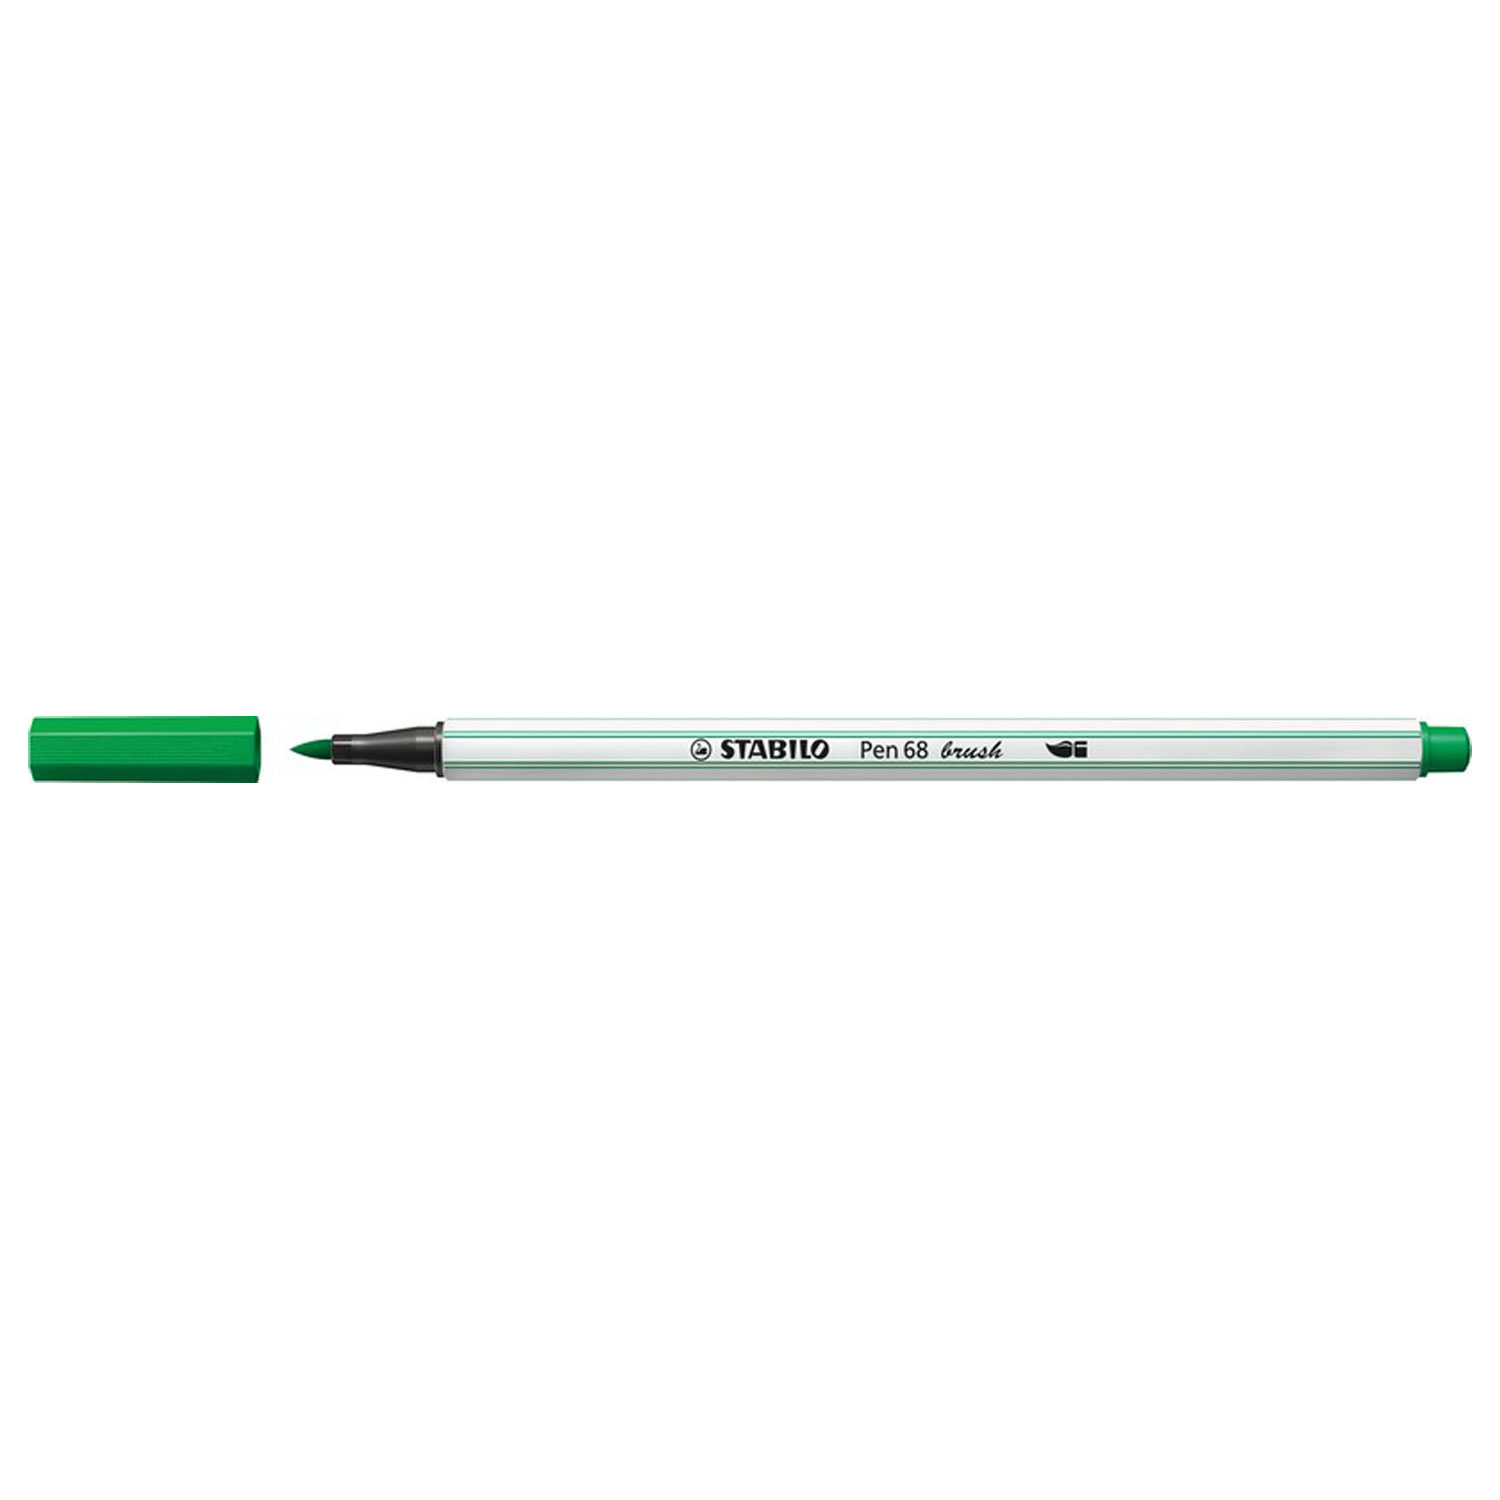 STABILO Pen 68 Brush - Filzstift - Grün (36)